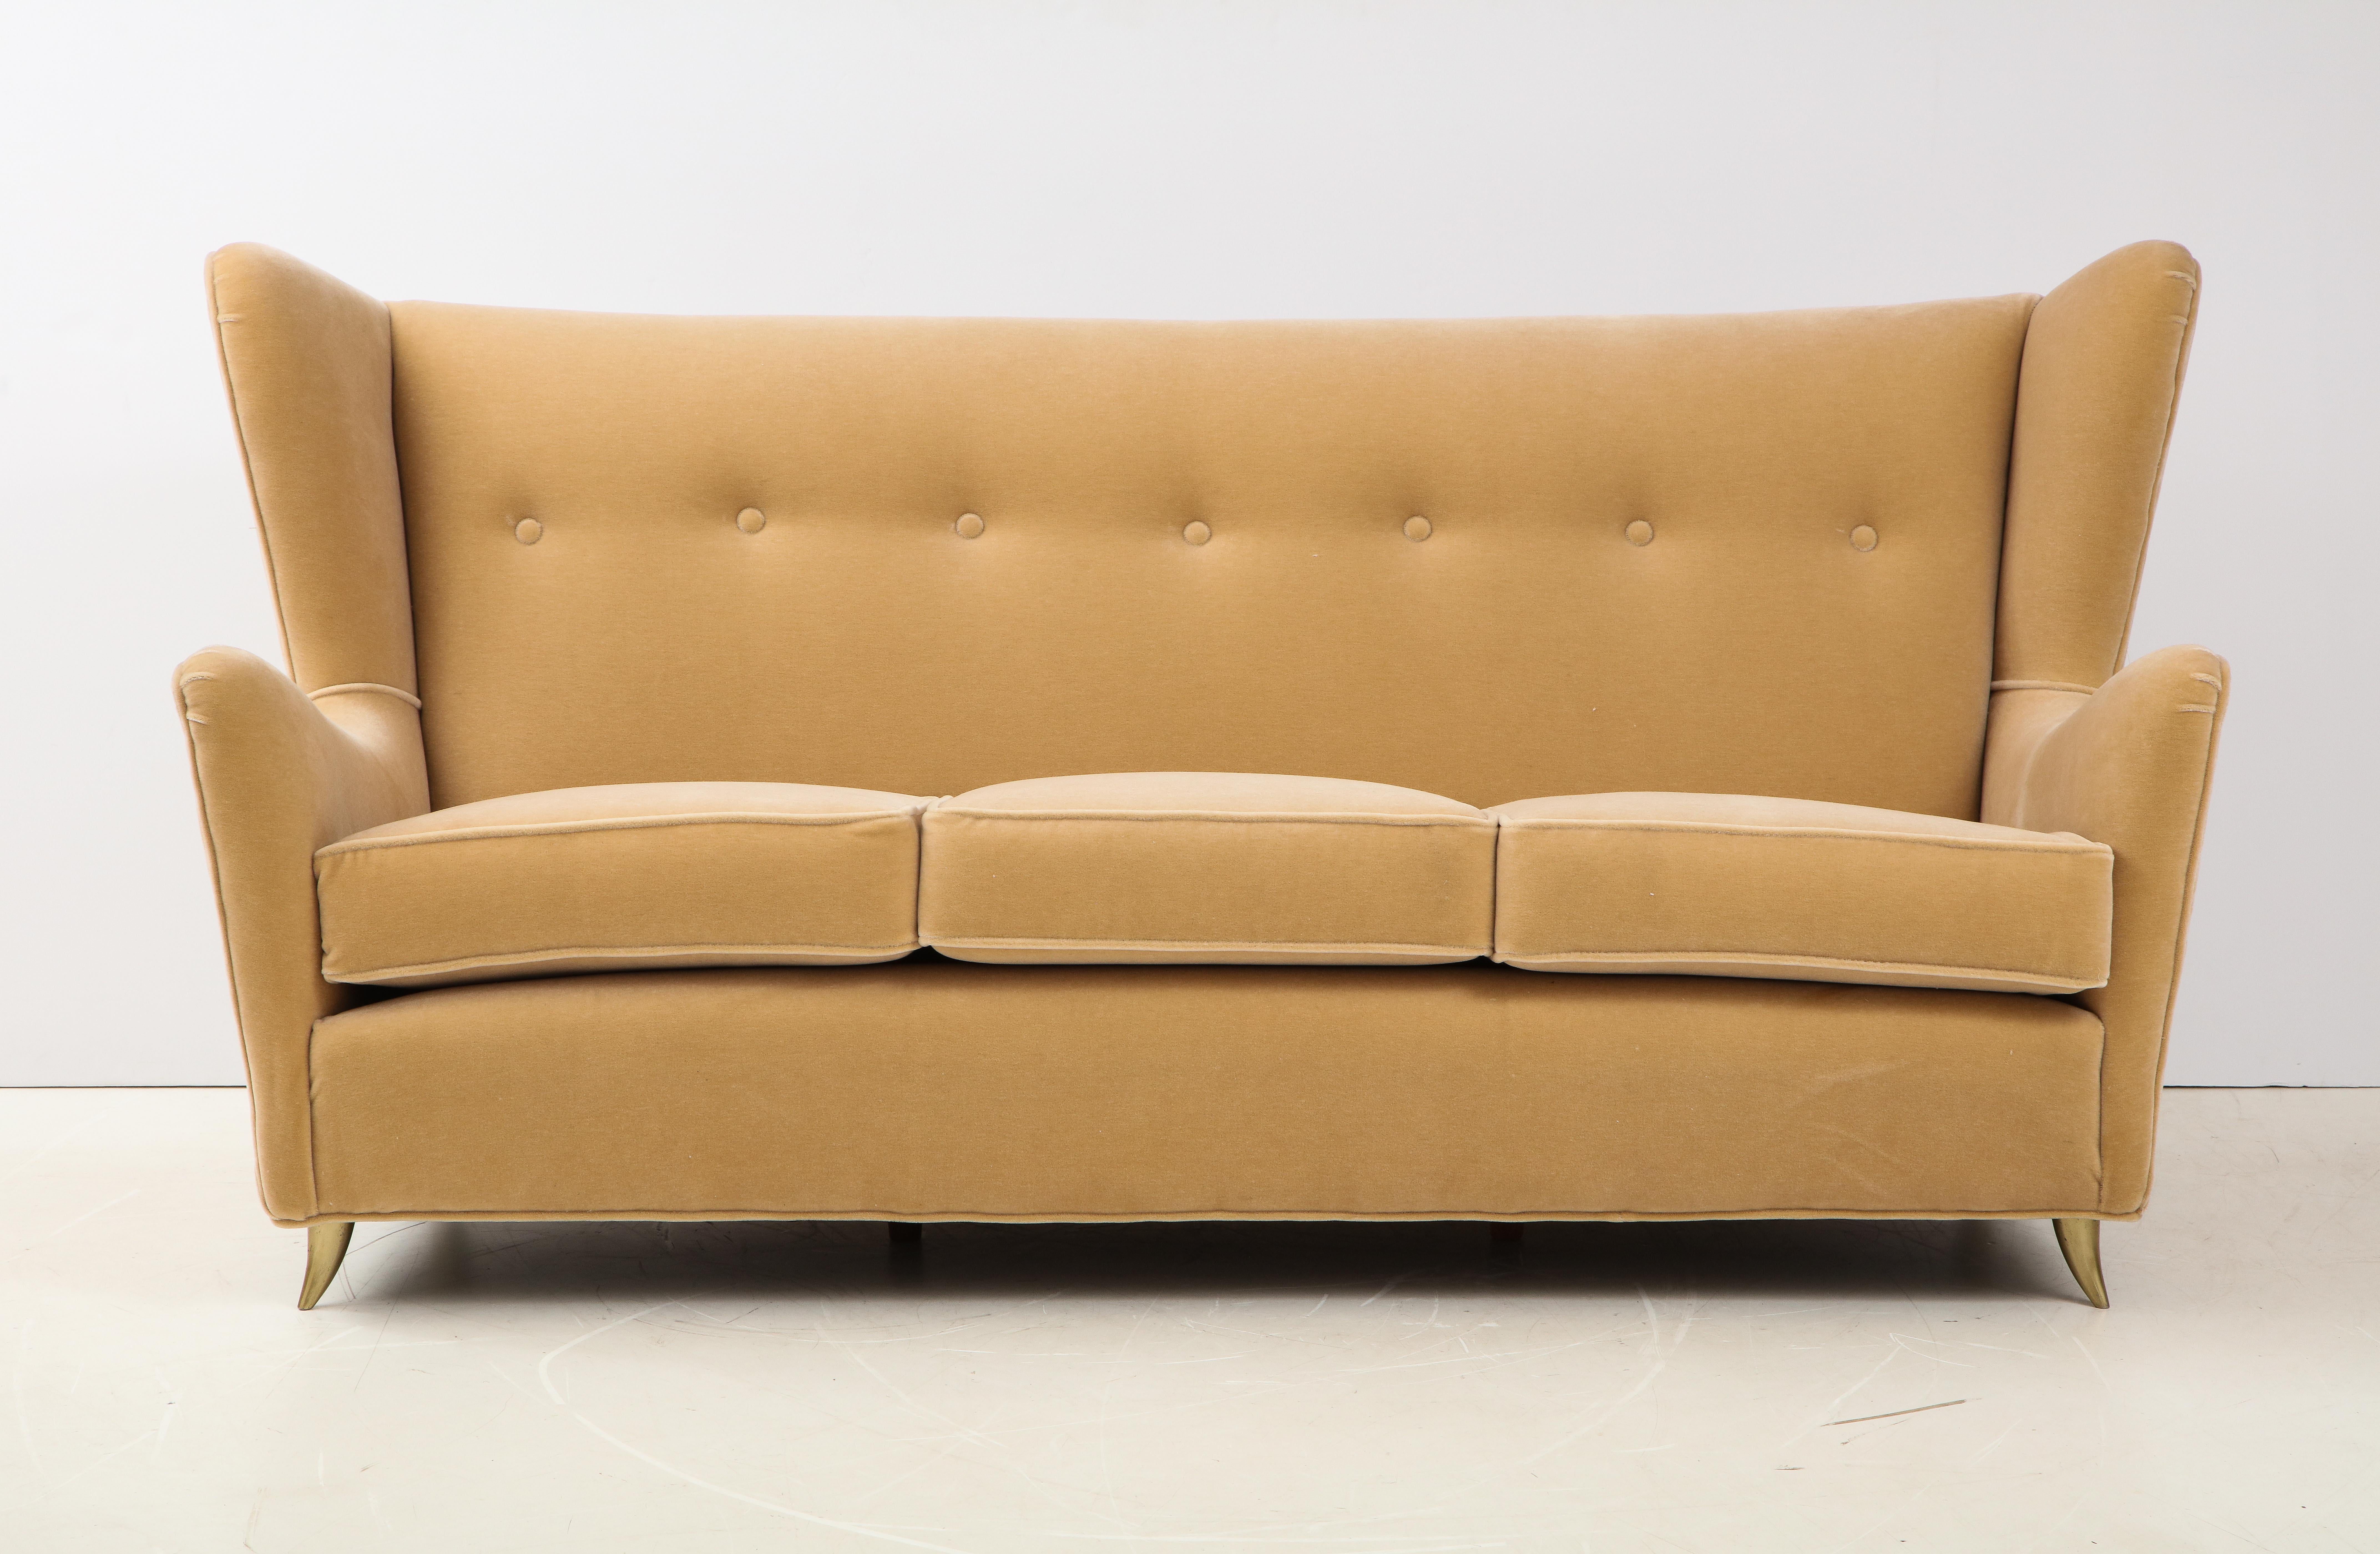 Wunderschönes italienisches Wingback-Sofa aus den 1950er Jahren mit Messingbeinen im Stil von Gio Ponti. Neu gepolstert mit Mohairstoff.